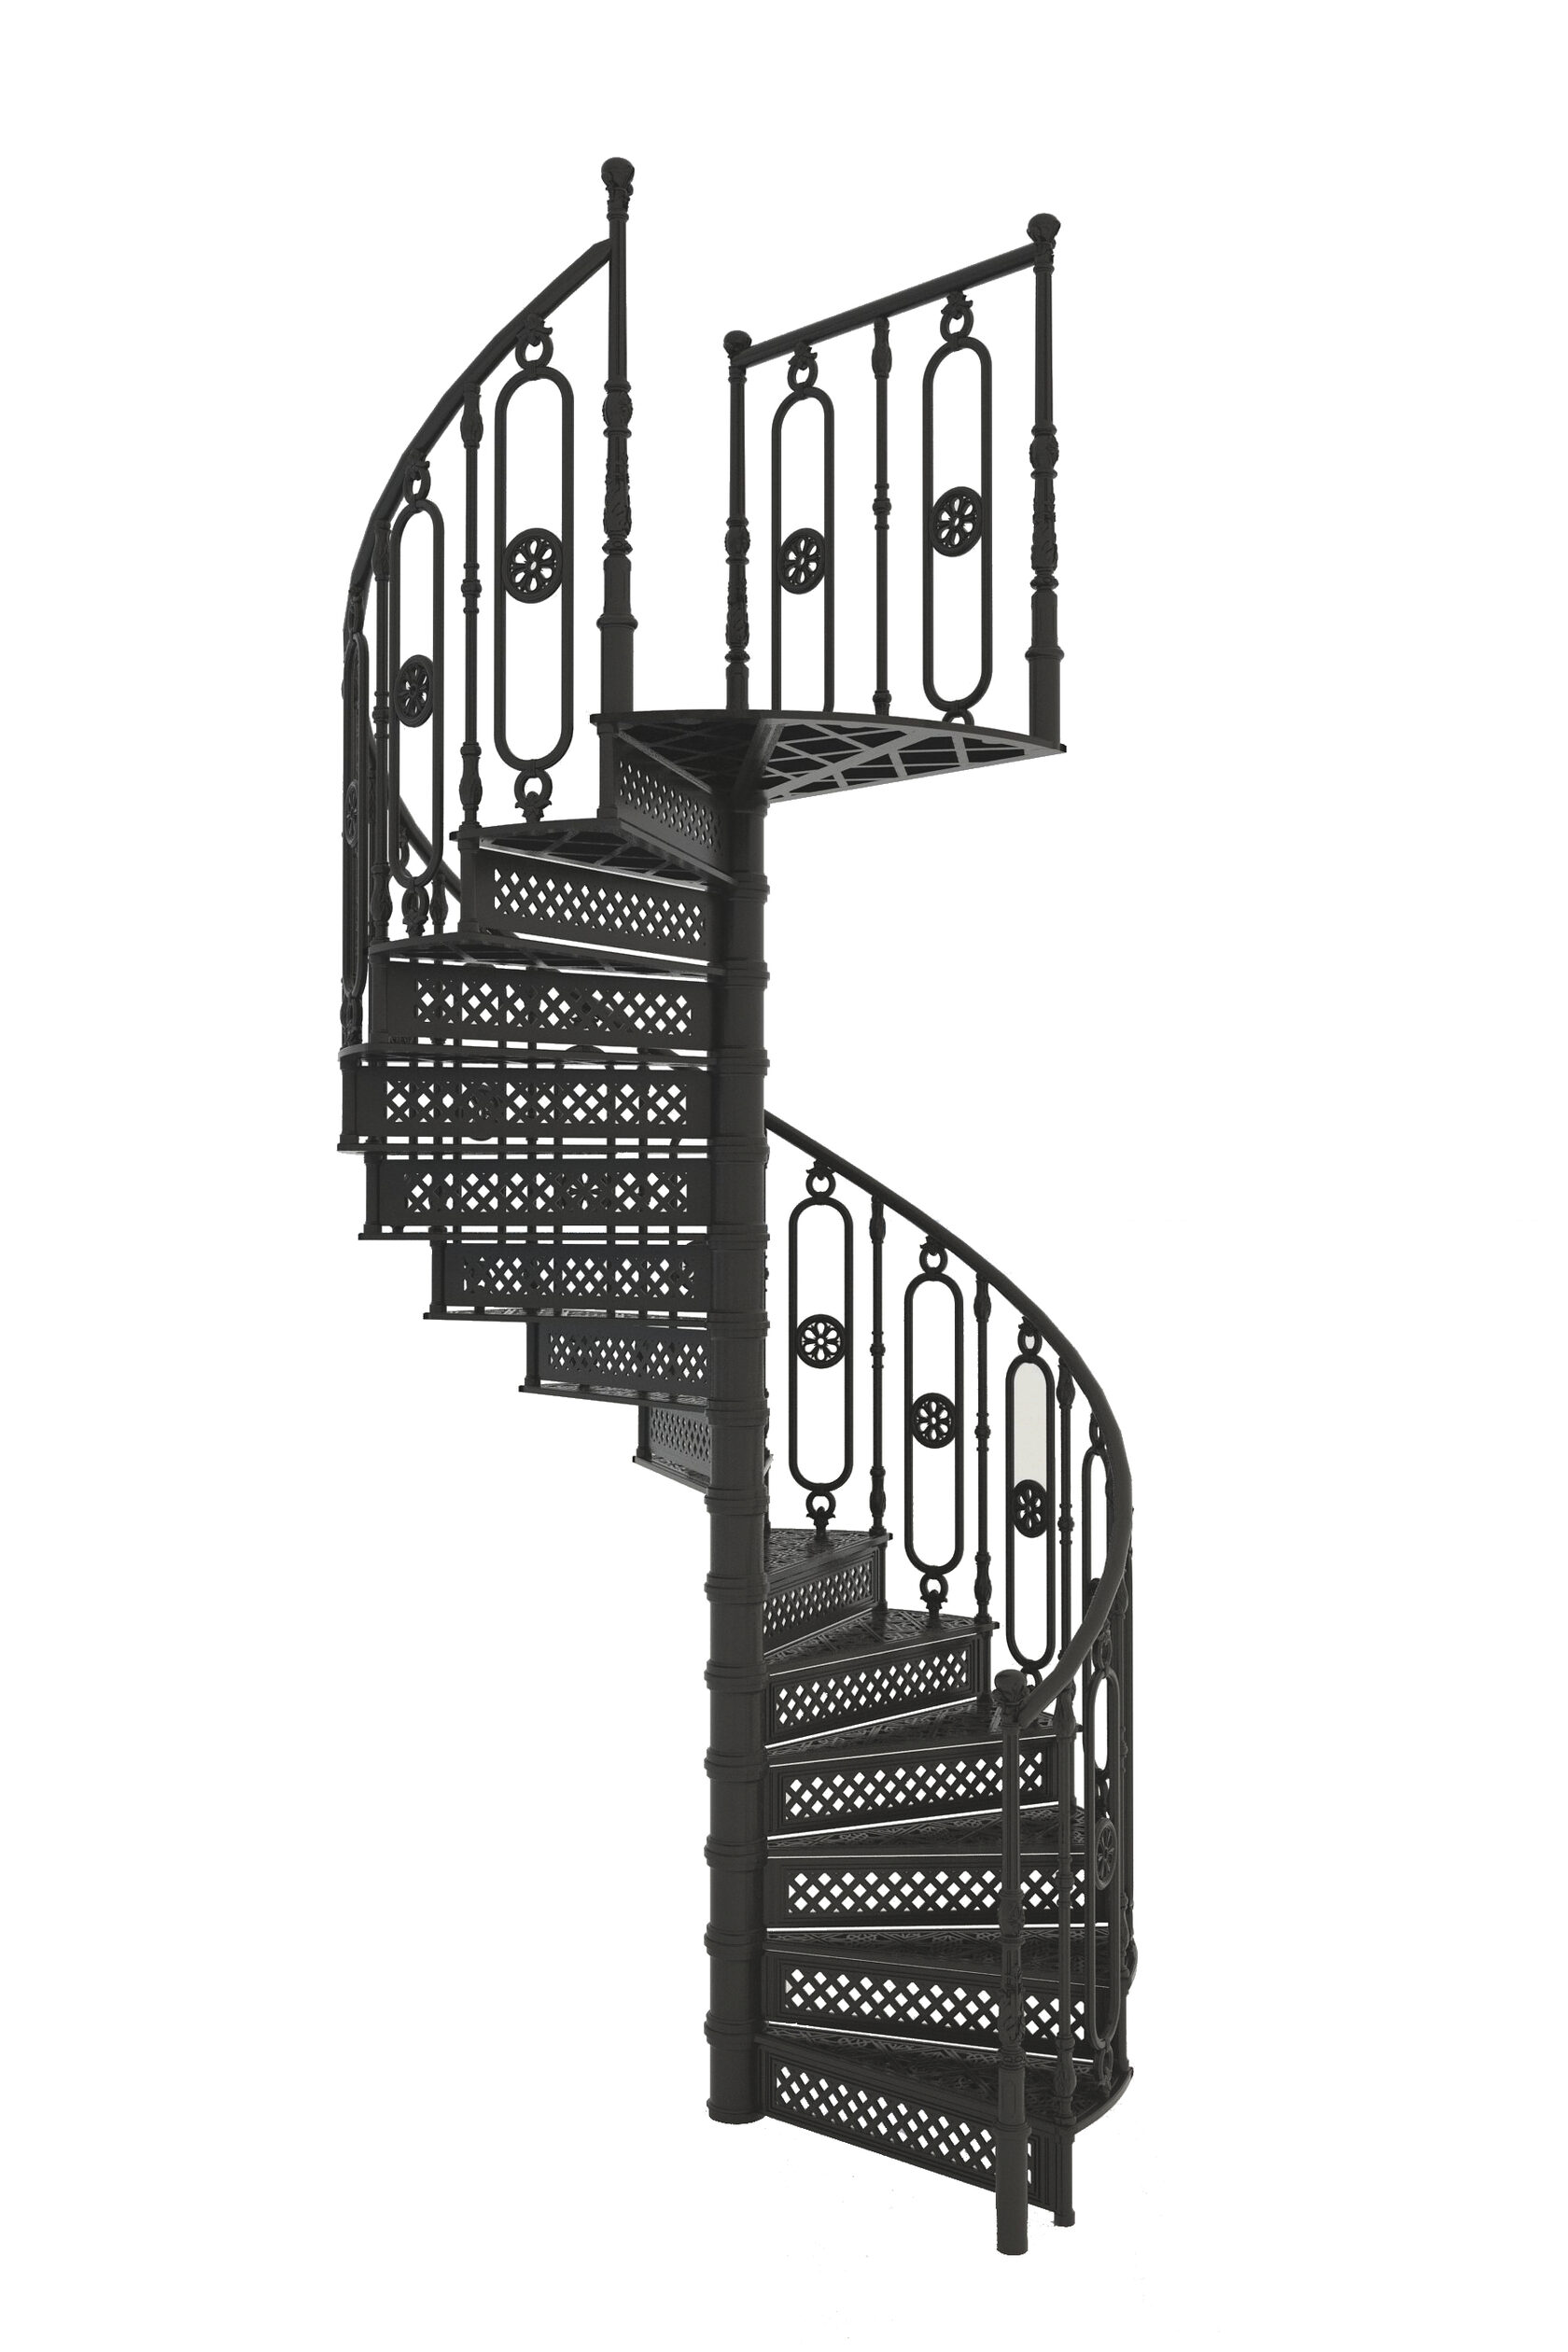 кованые винтовые лестницы фото